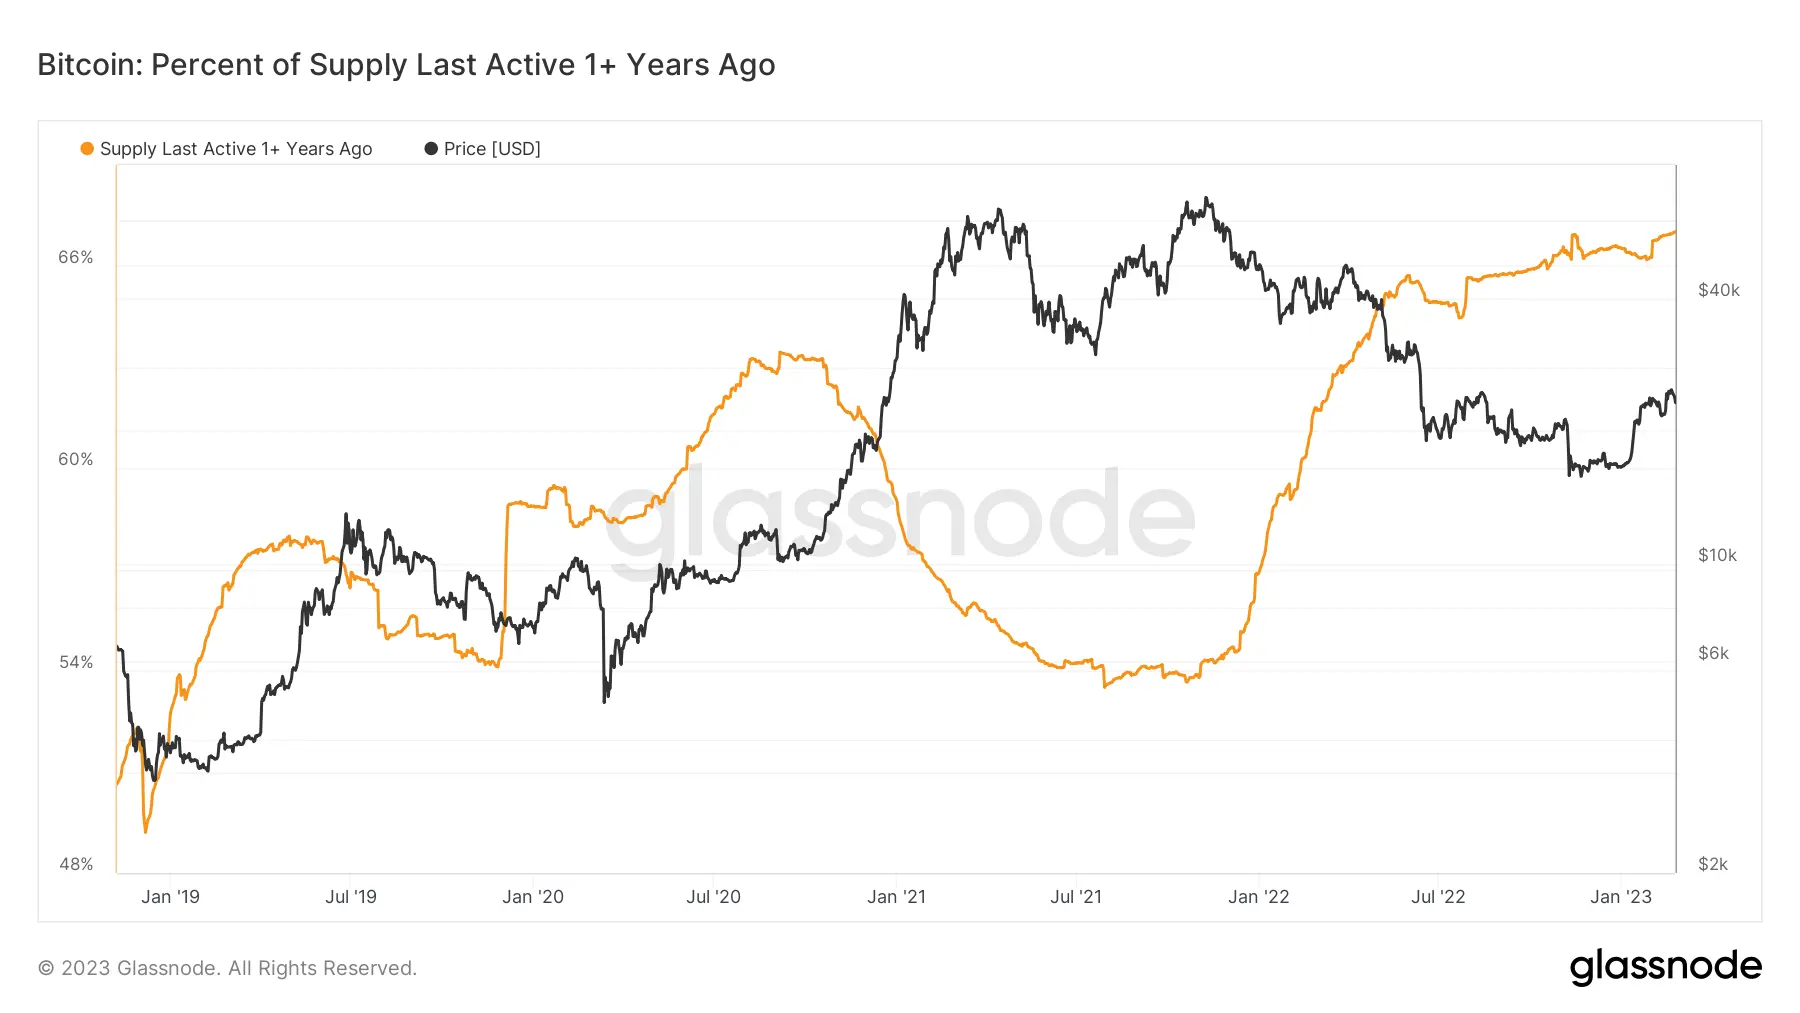 Prozentsatz der Bitcoins, die das letzte mal vor 1+ Jahren bewegt wurden, Quelle: Glassnode